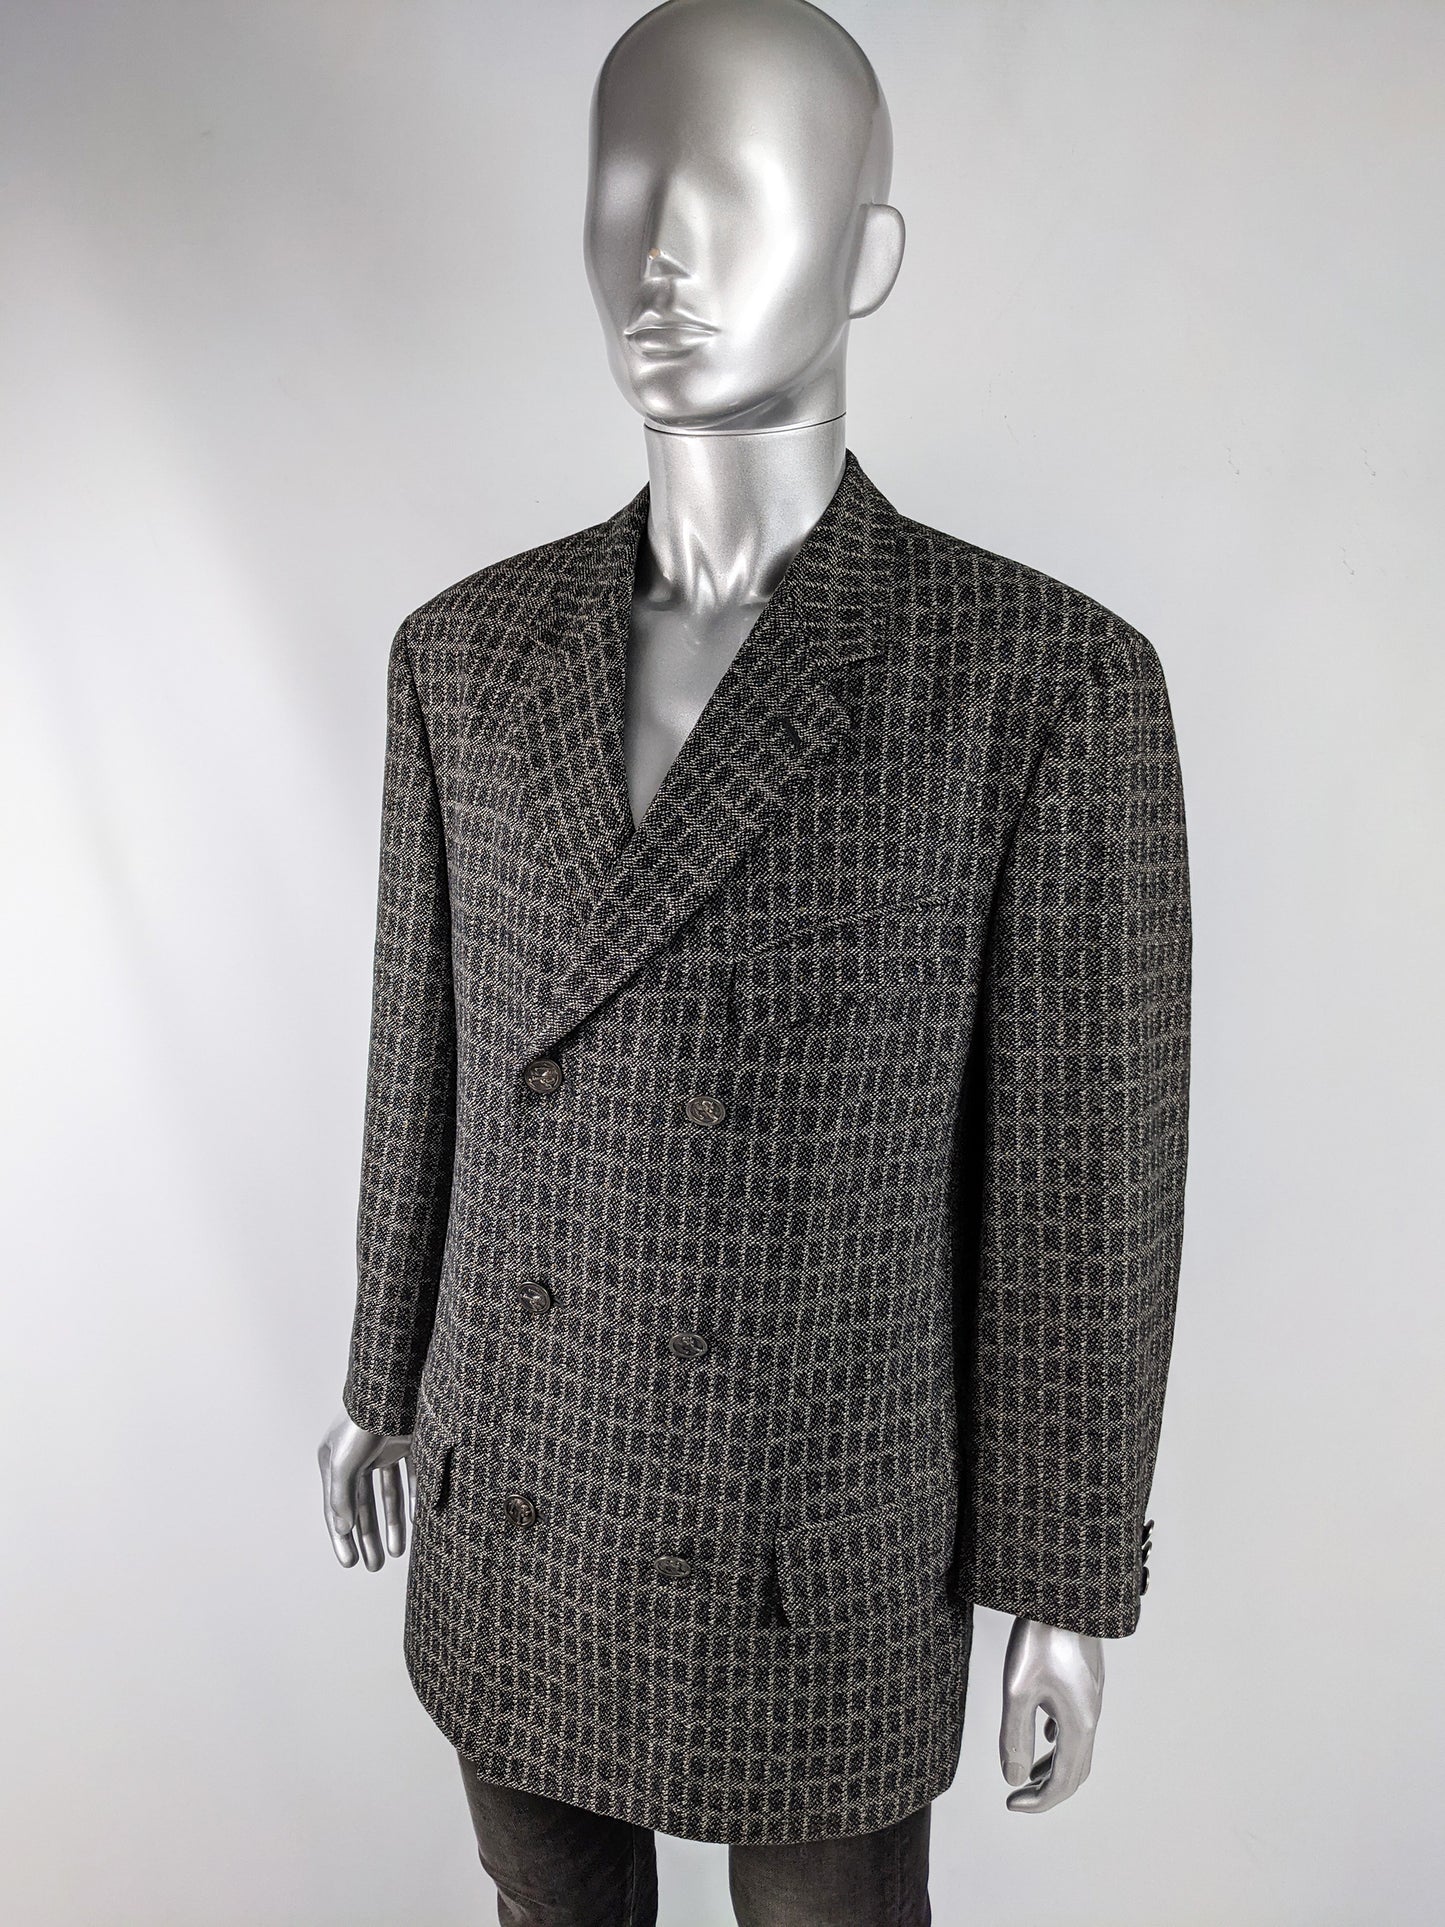 Gianni Versace Versus Vintage Grey Wool & Mohair Jacket, 1990s